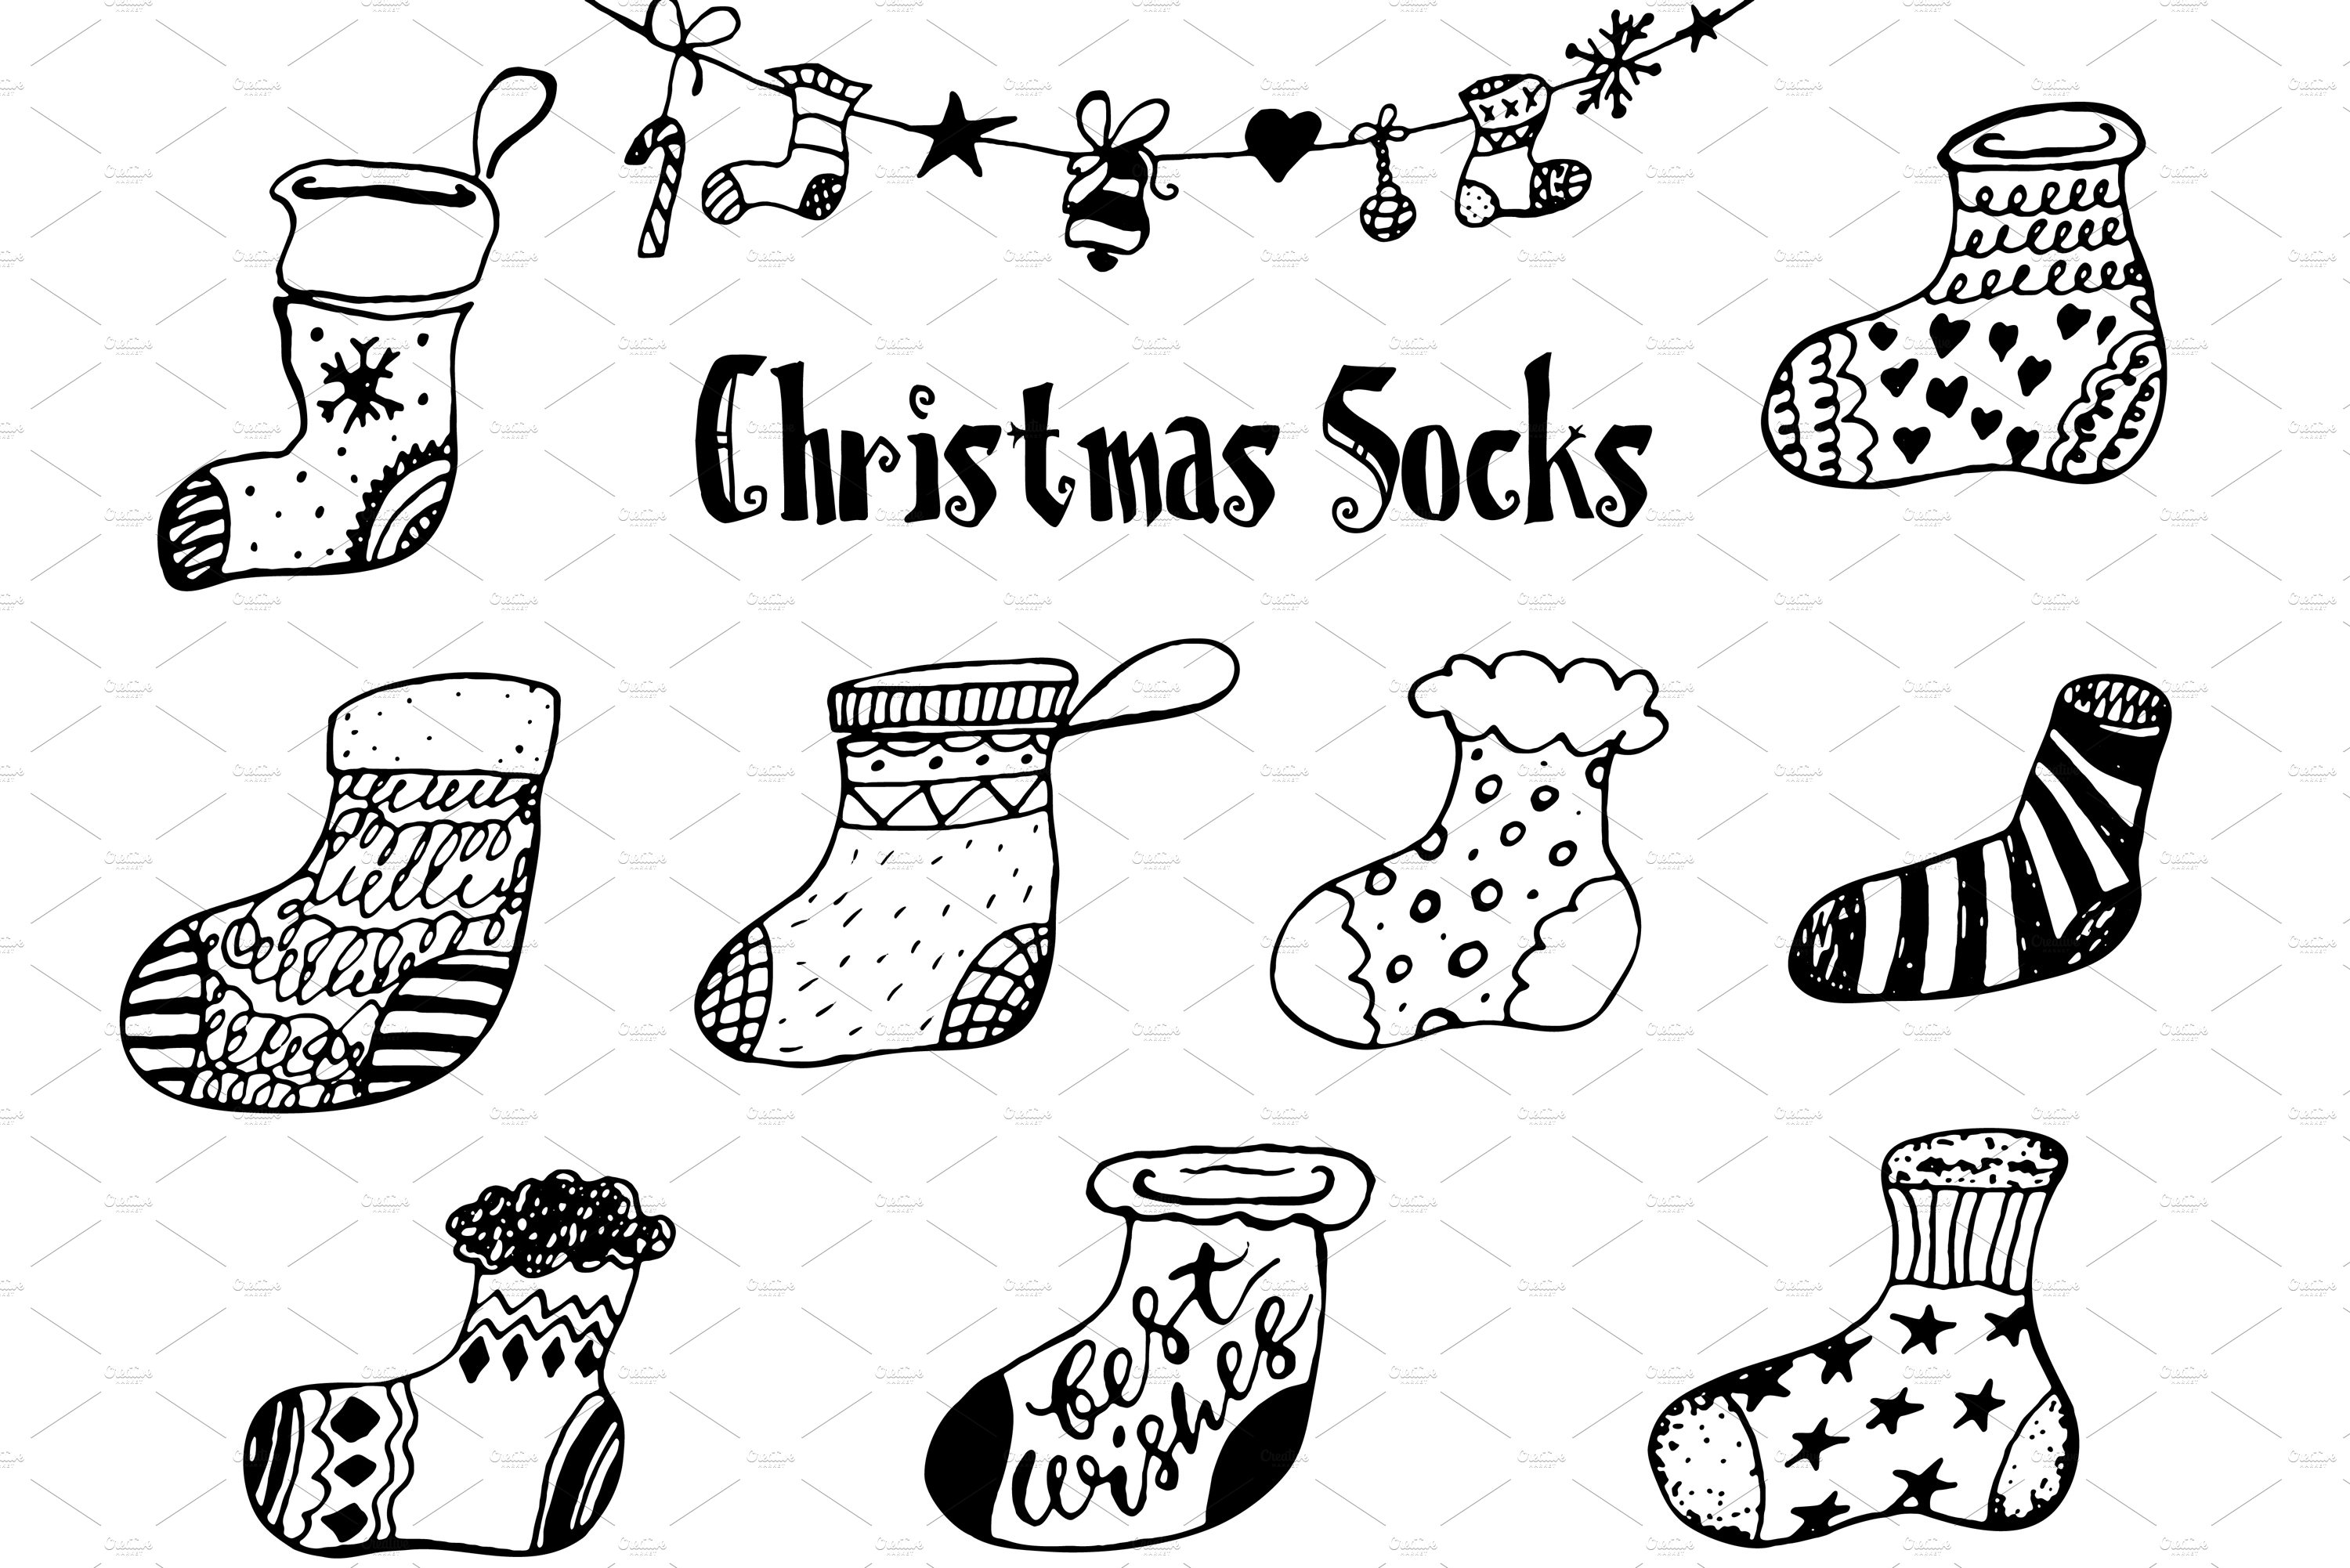 Christmas socks set.